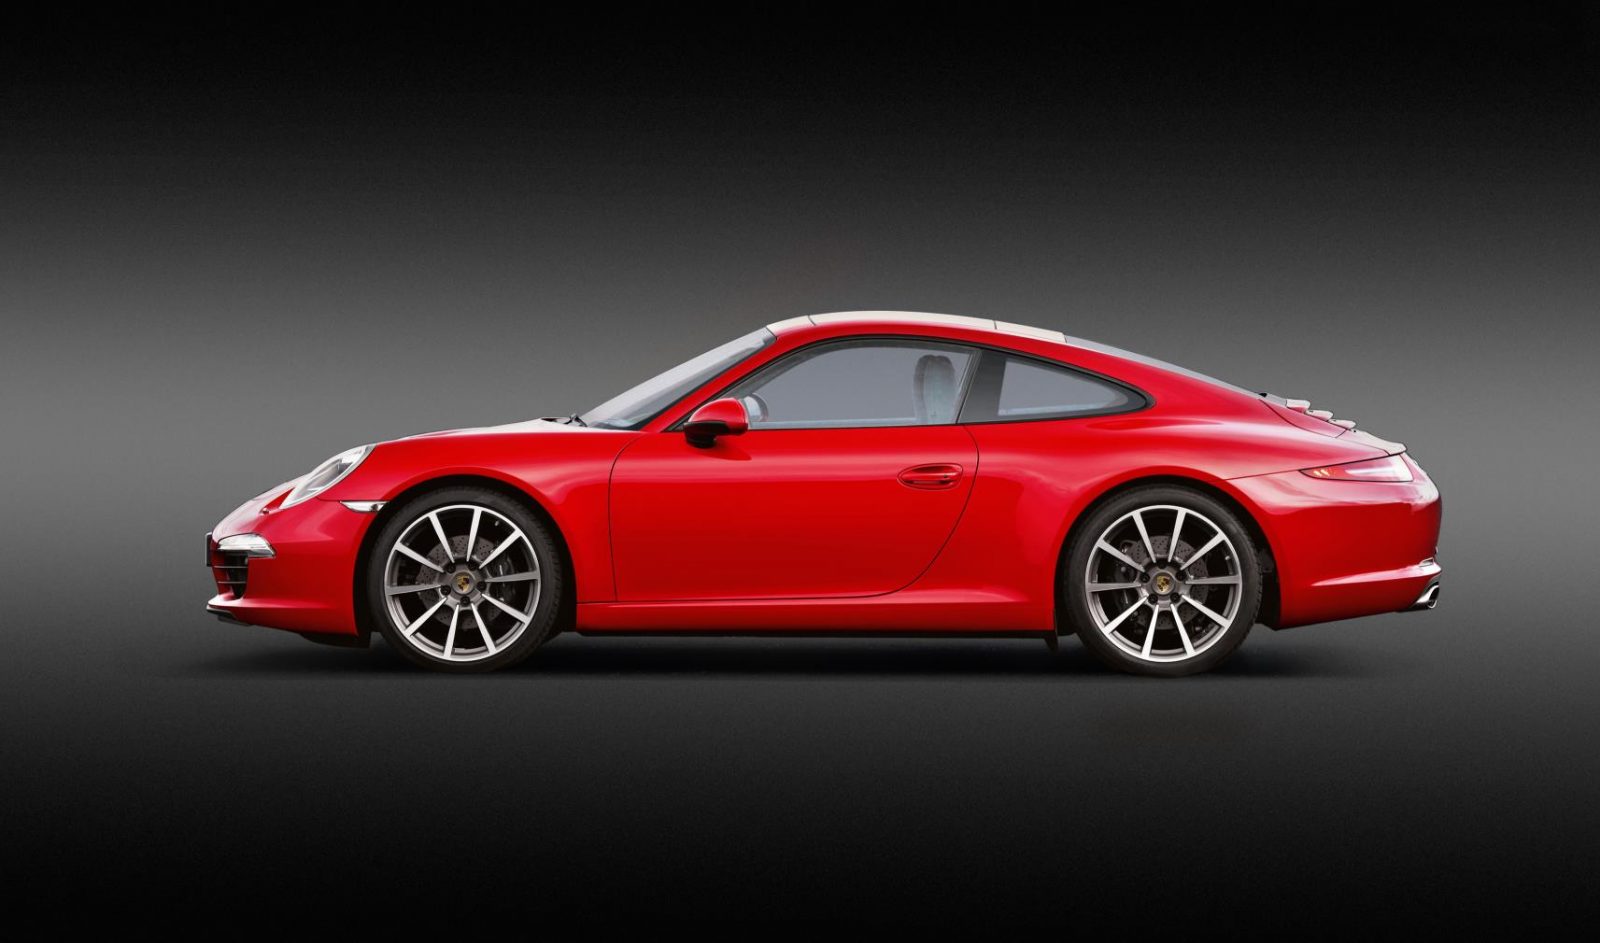 Historia del Porsche 911, parte 7. Serie 991 un mismo